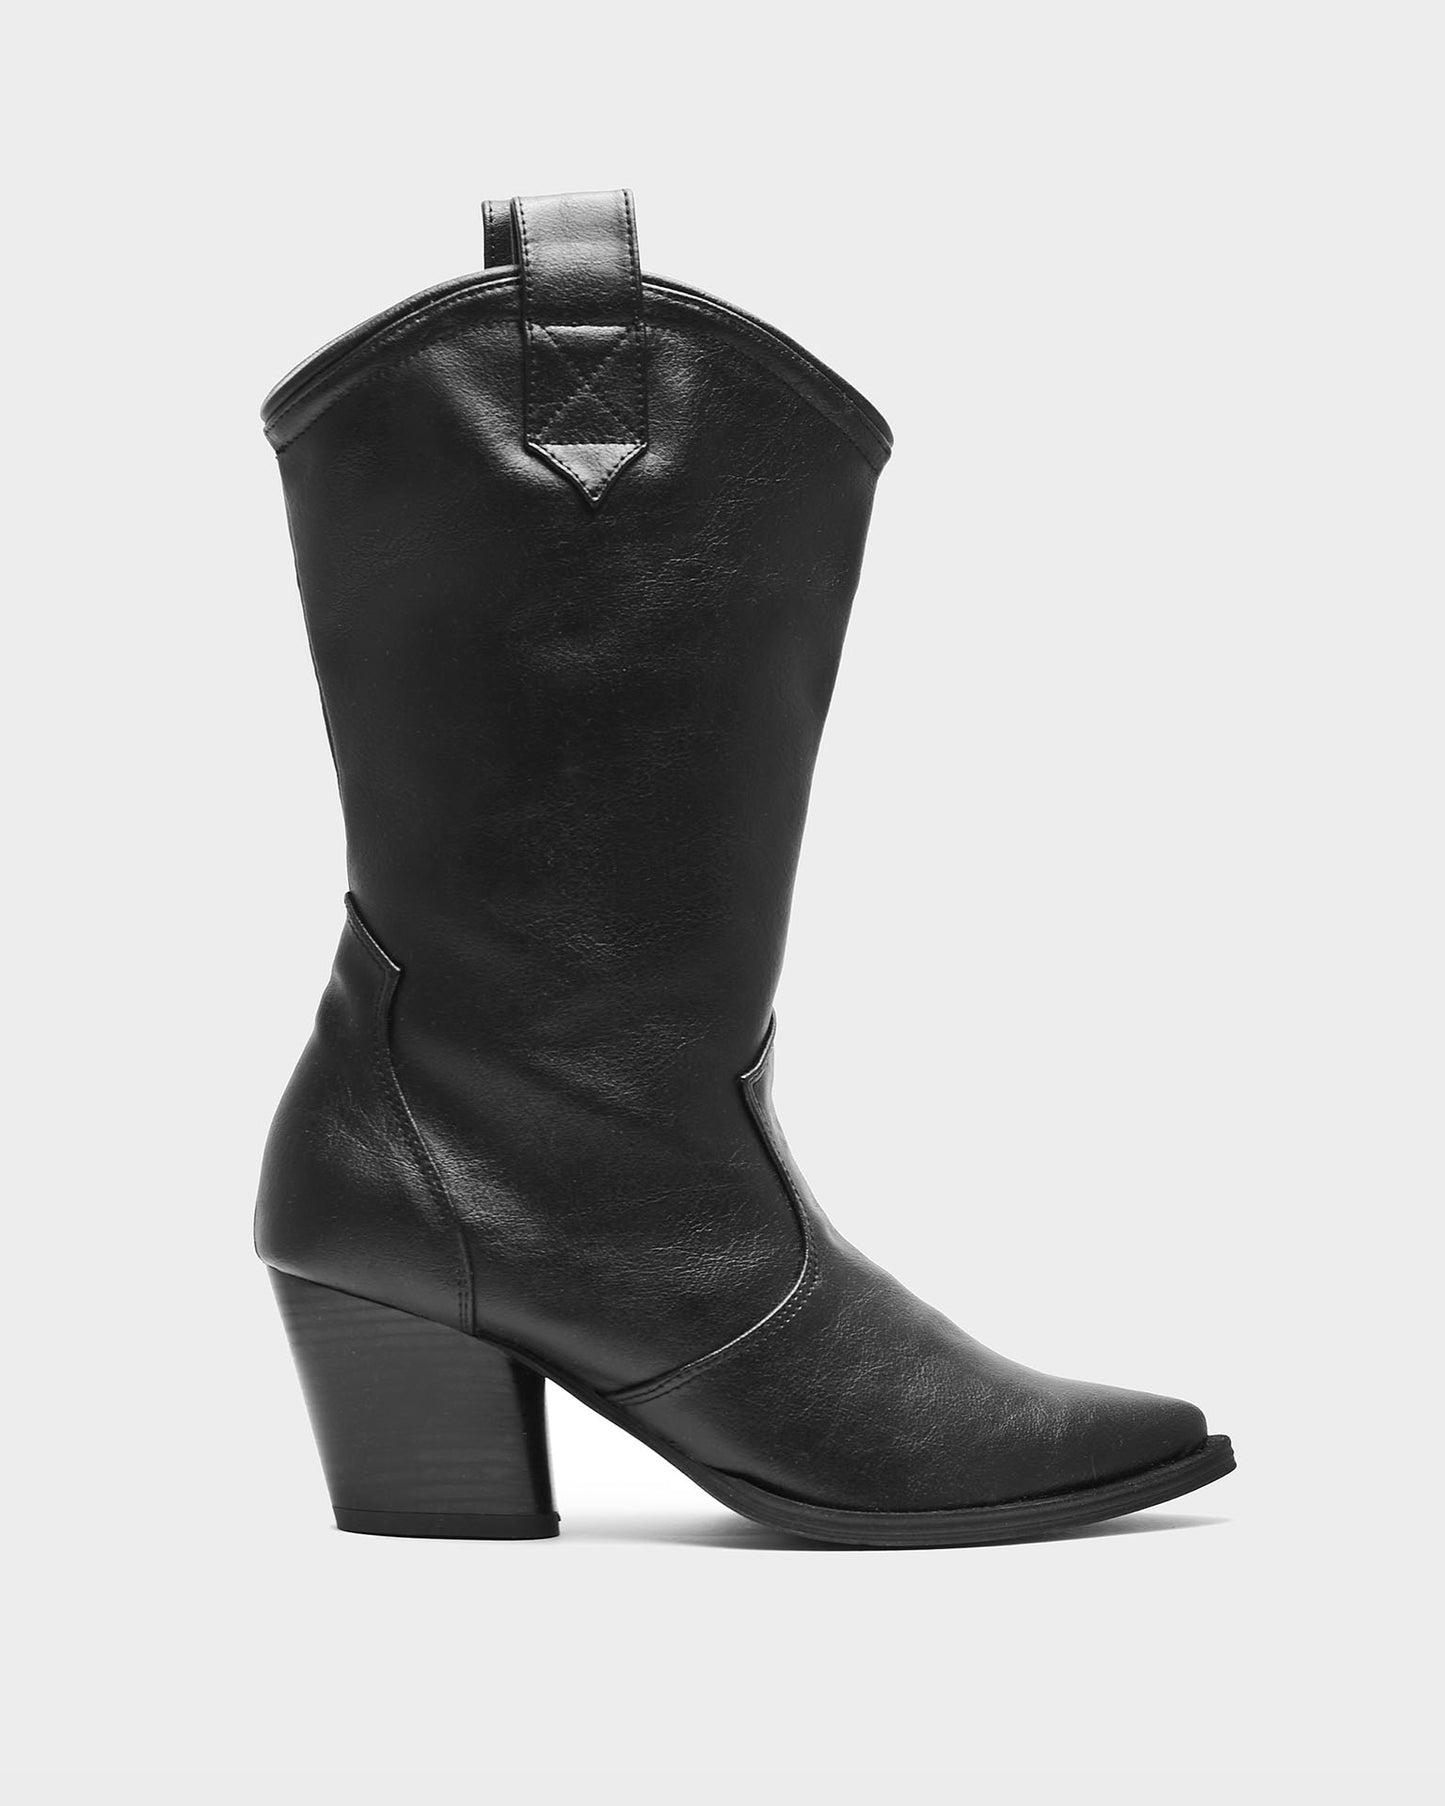 Sleeky Cowboy Boots made of Vegea grape leather